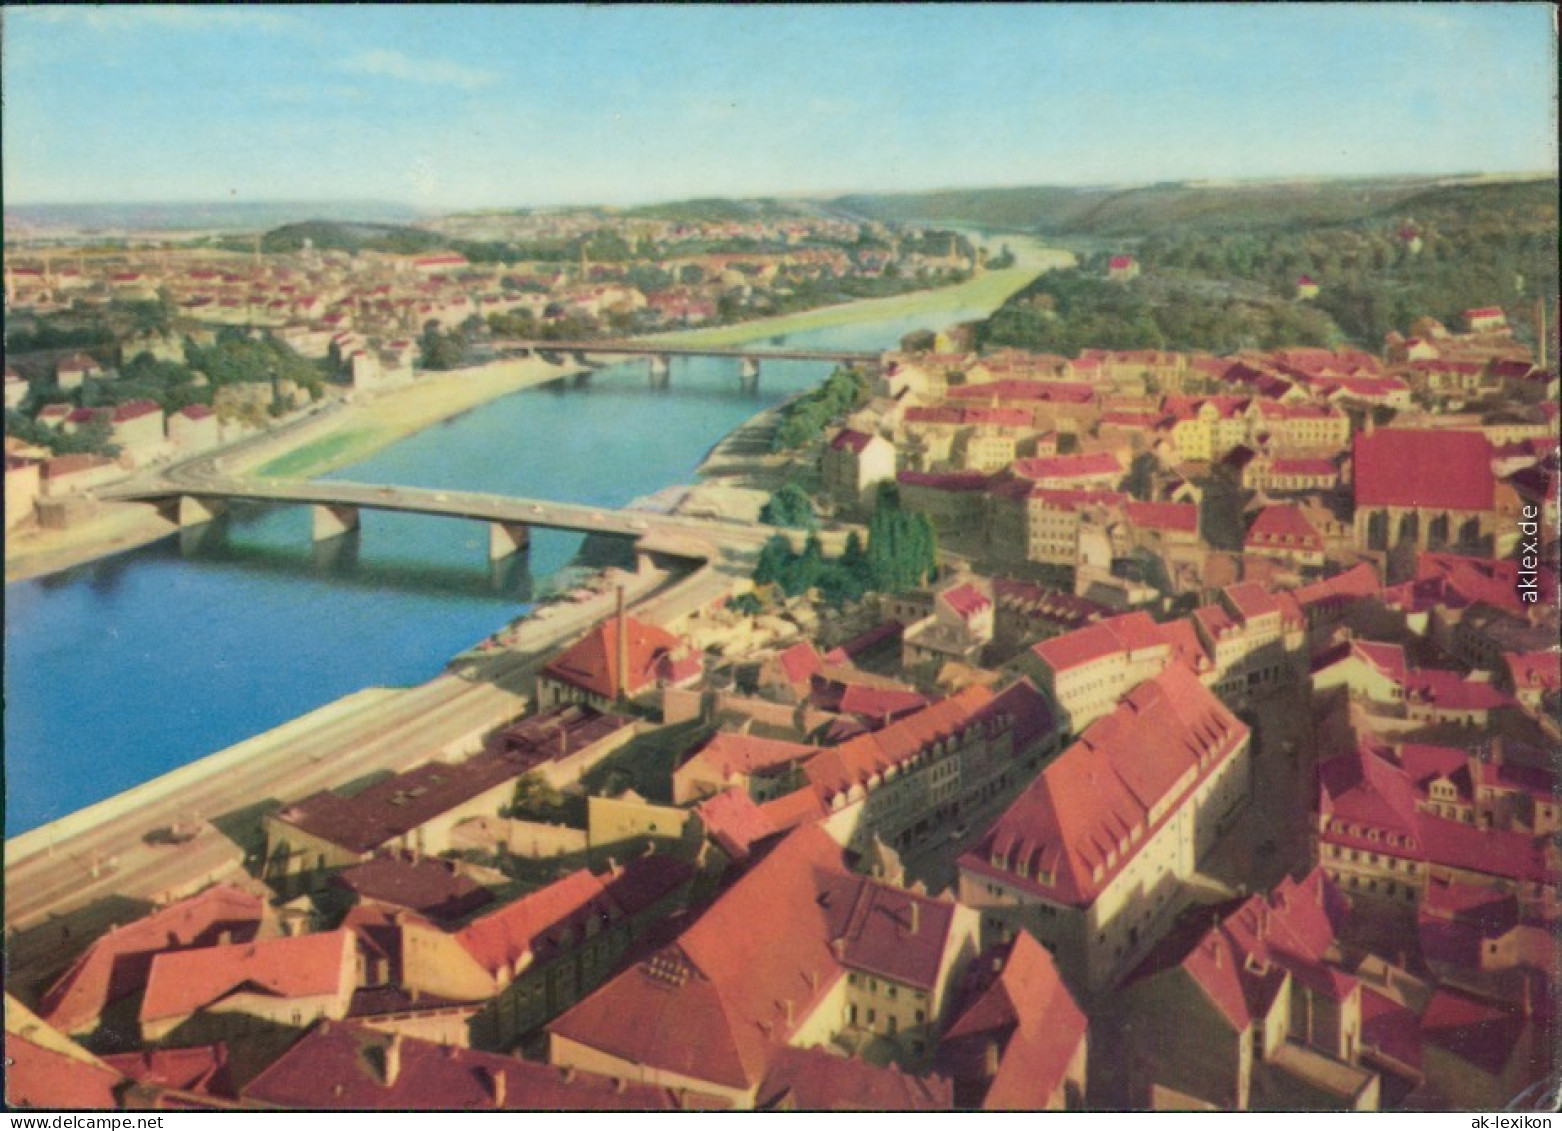 Ansichtskarte Meißen Panorama-Ansicht 1966 - Meissen